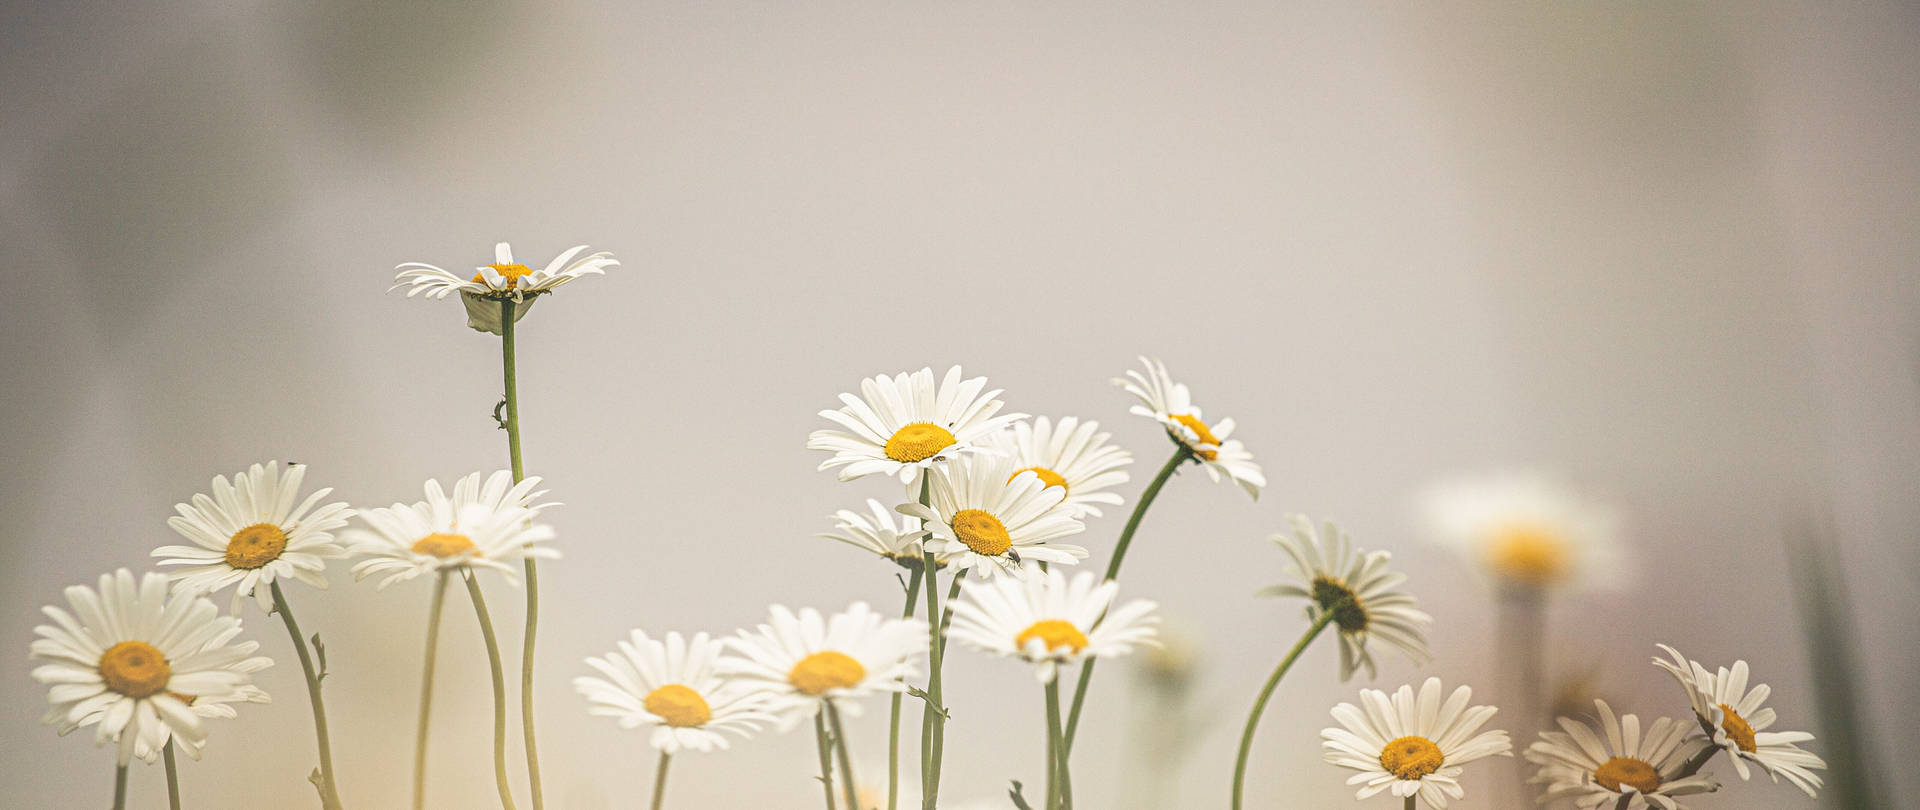 Daisy blomster i svagt filter 4k Wallpaper